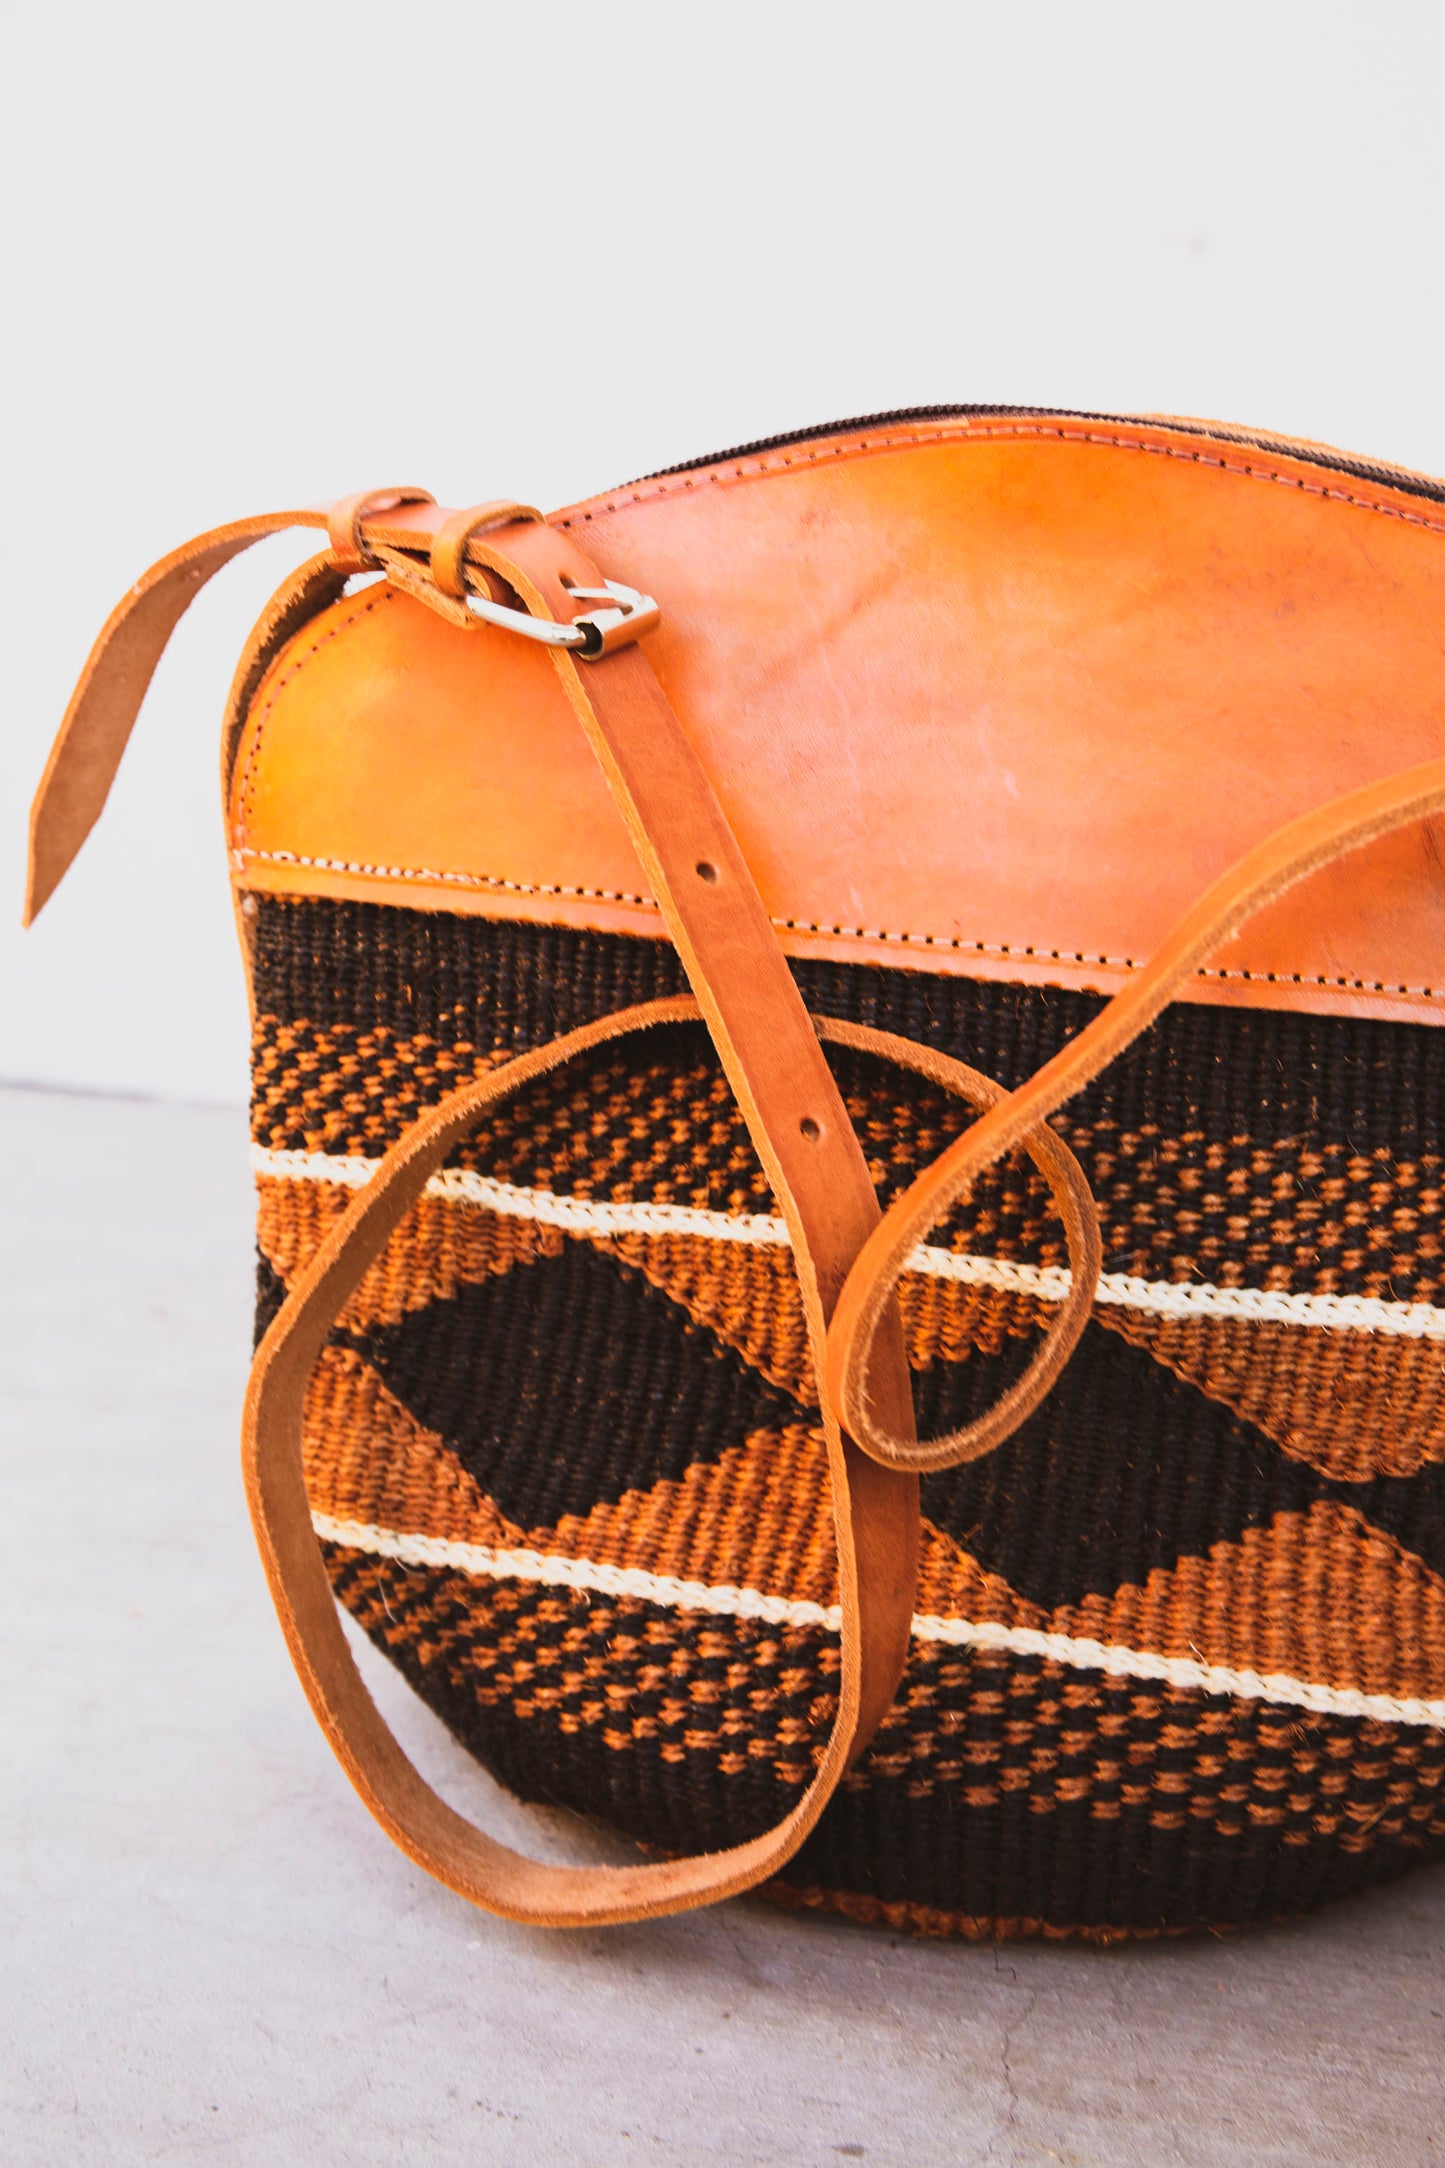 Woven Sisal Handbag with Leather Top